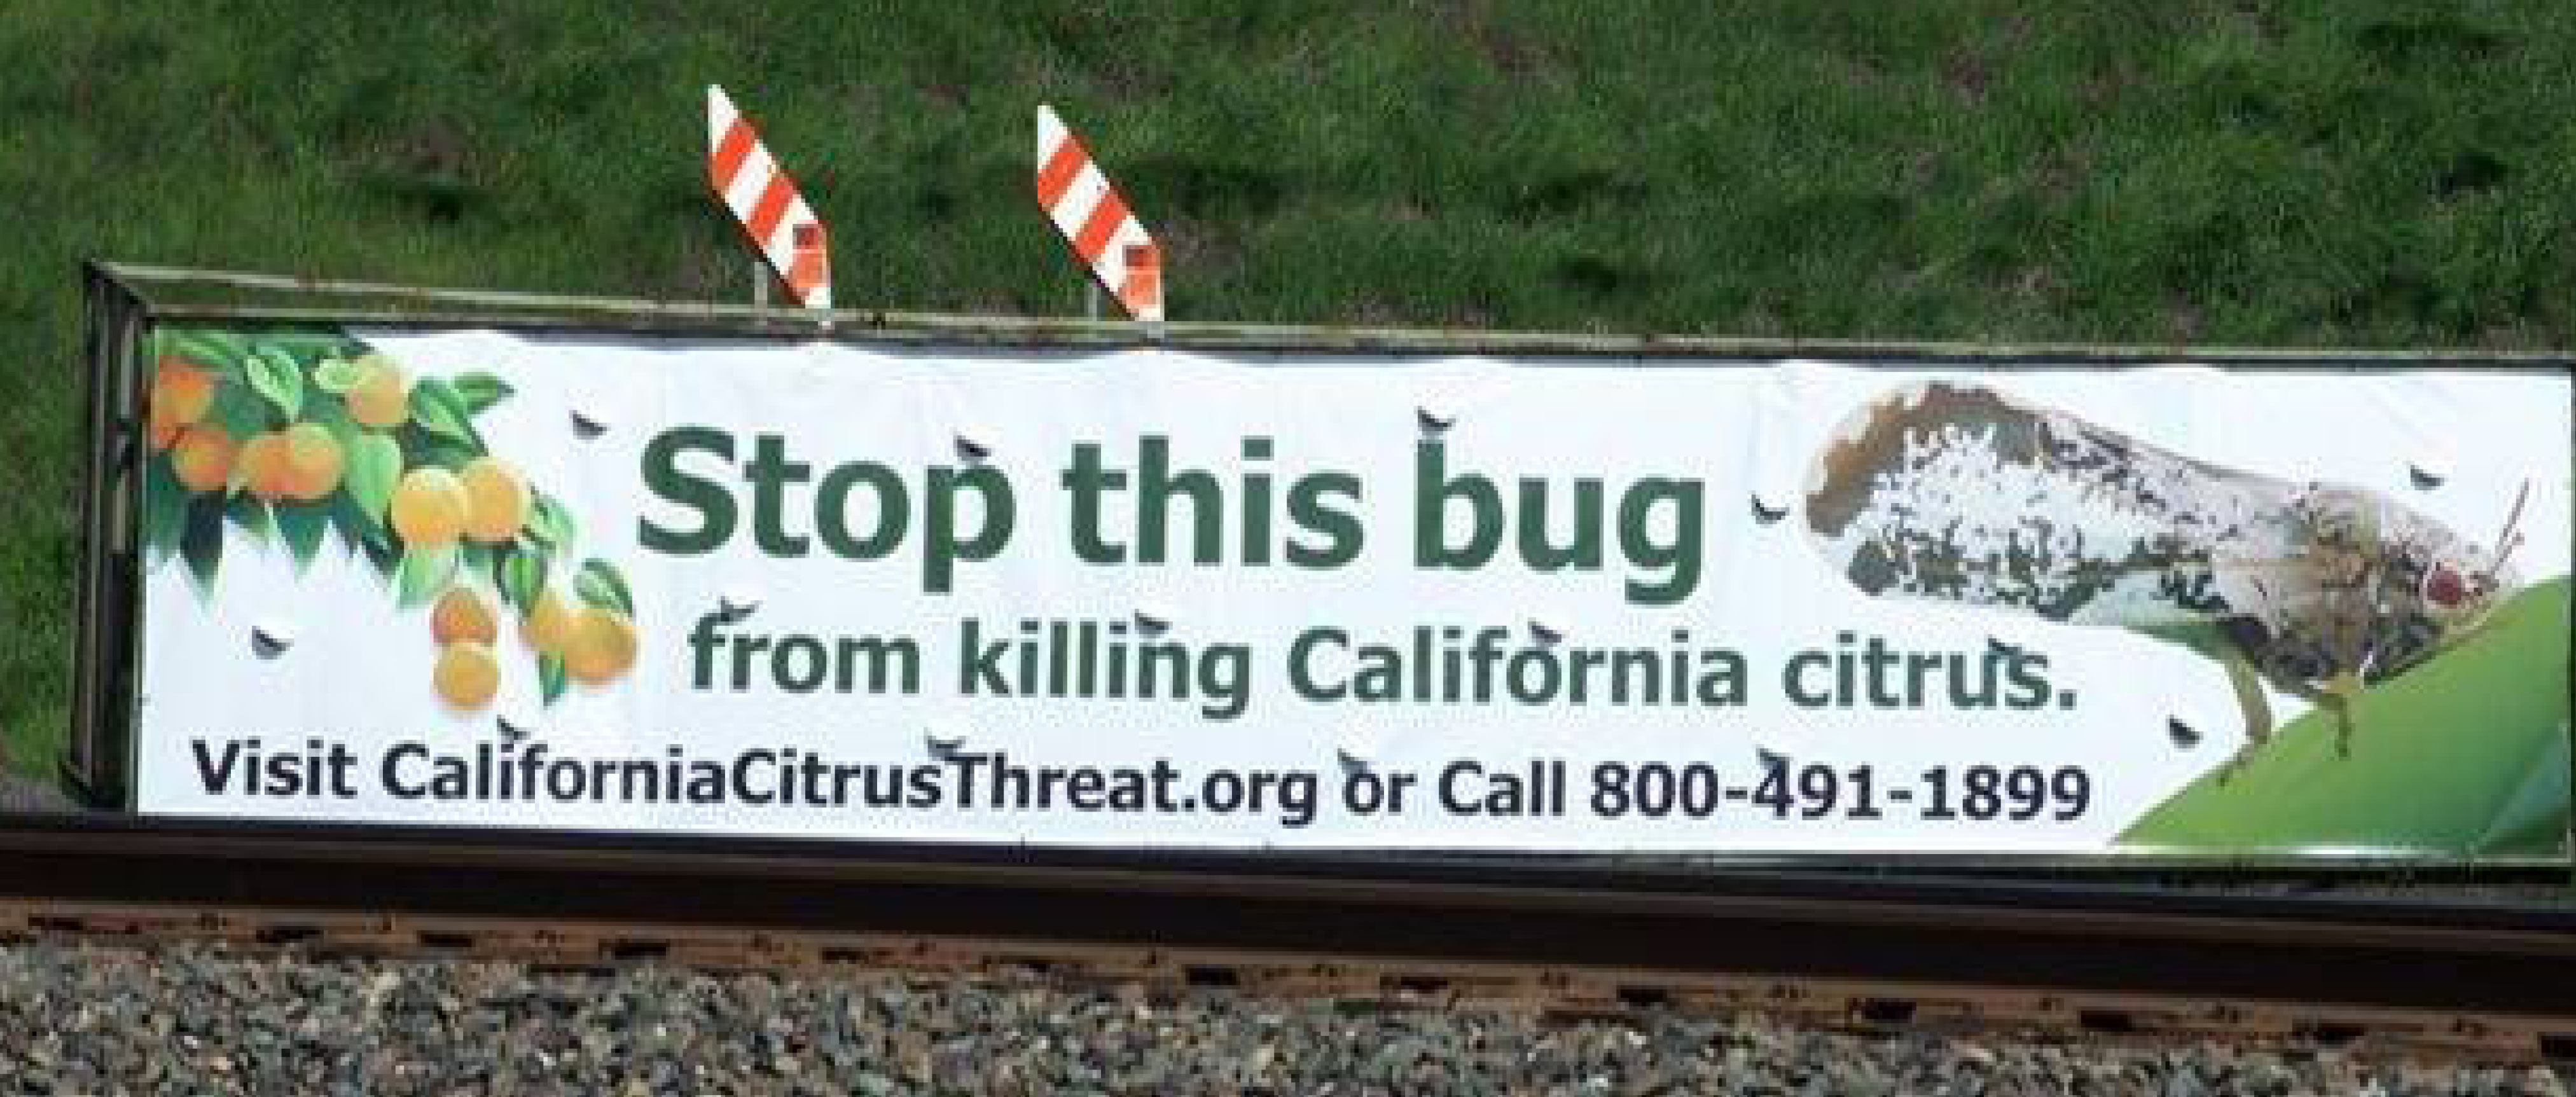 Protecting California Citrus